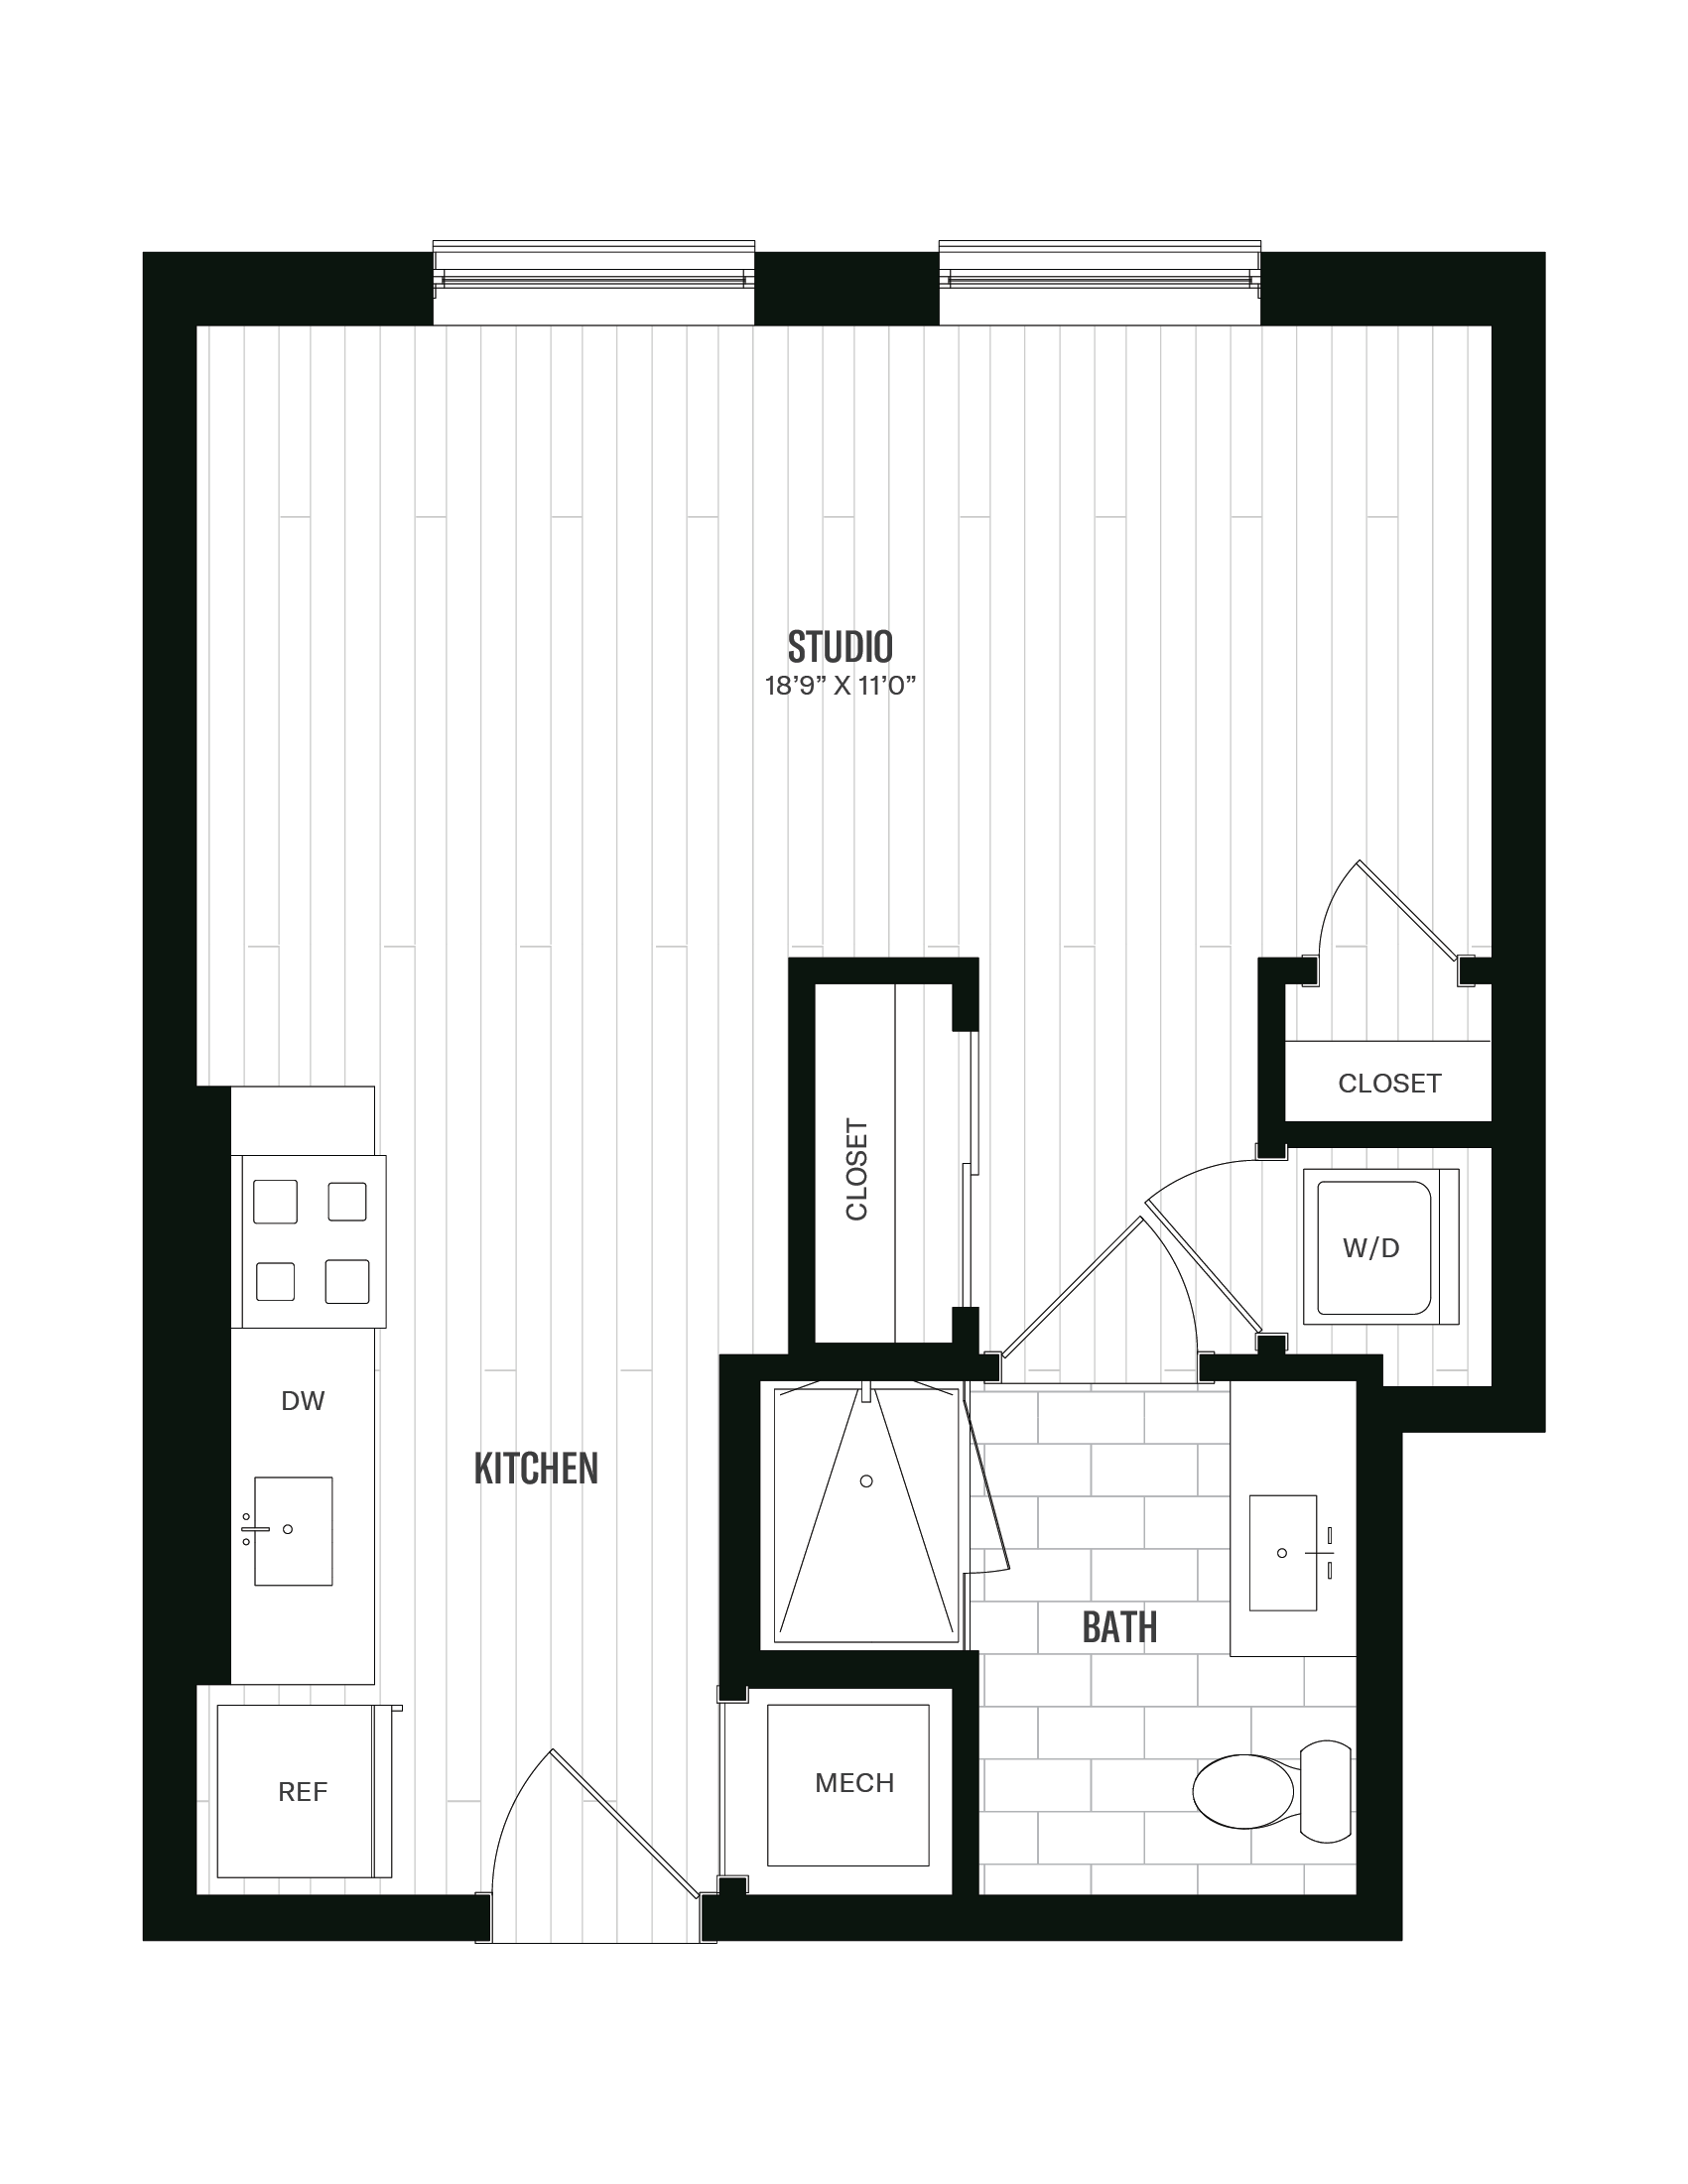 Floorplan image of unit 248